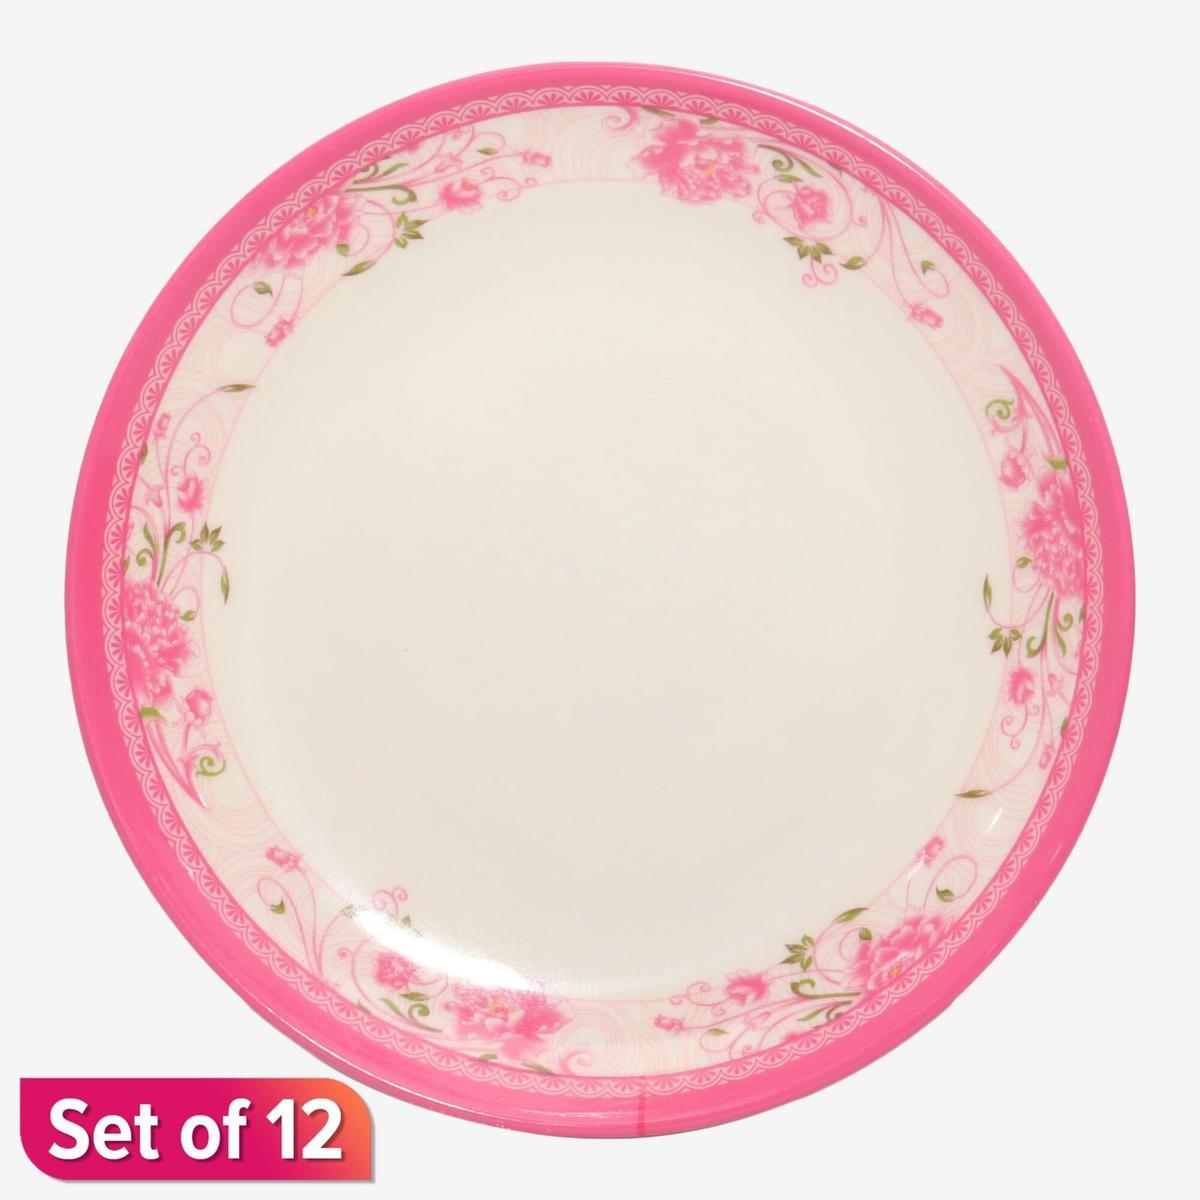 pink melamine floral design serve plate 8 inch